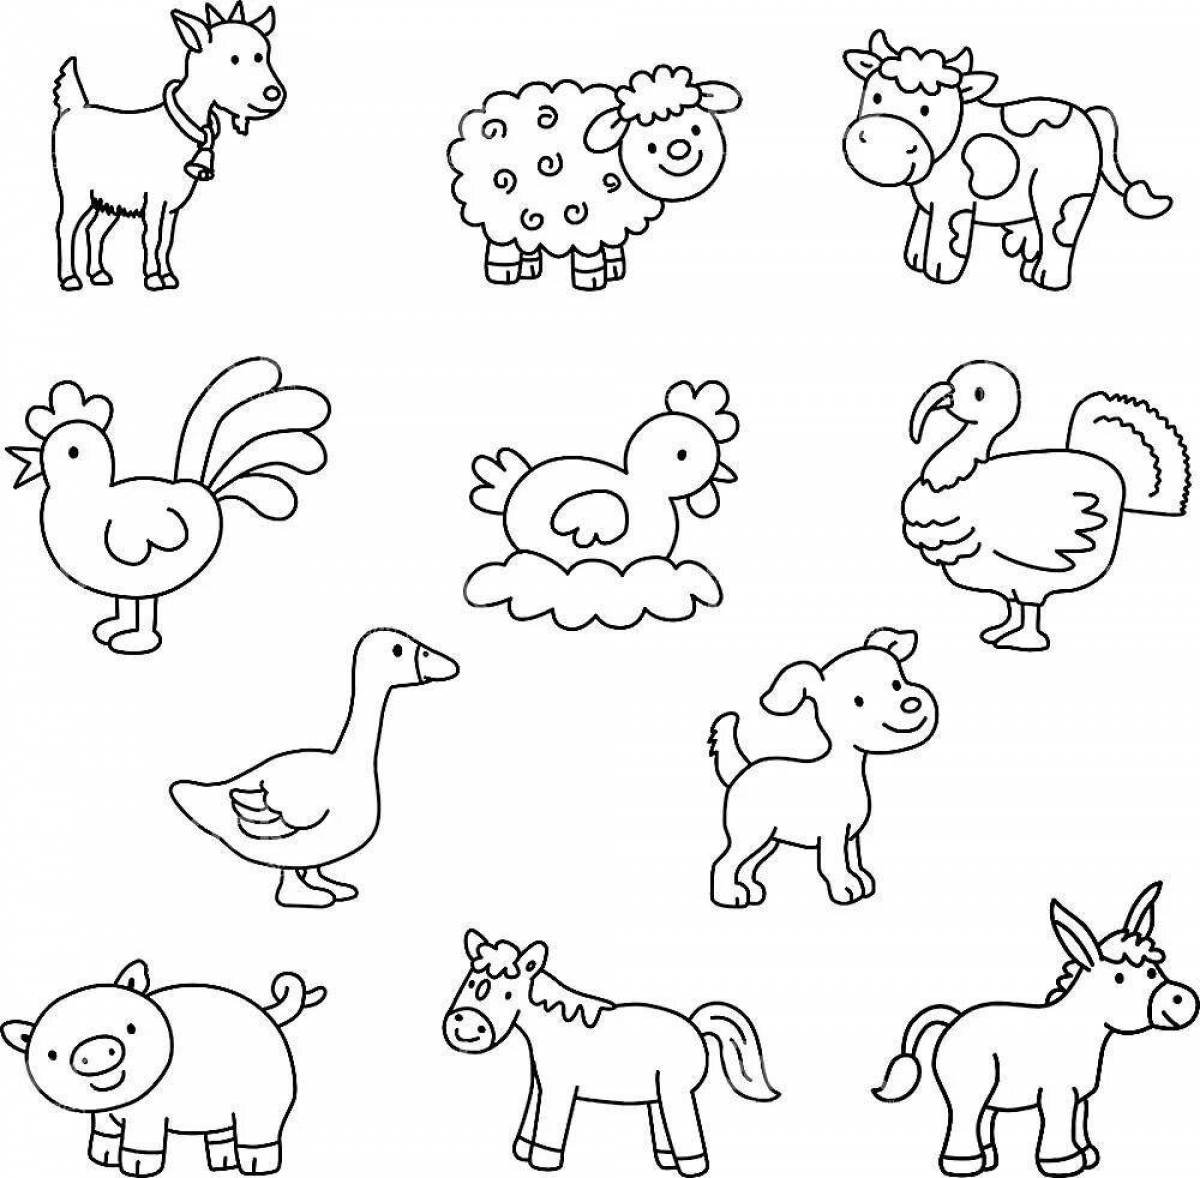 Карточки «Дикие и экзотические животные» скачать для распечатки, картинки животных для детей